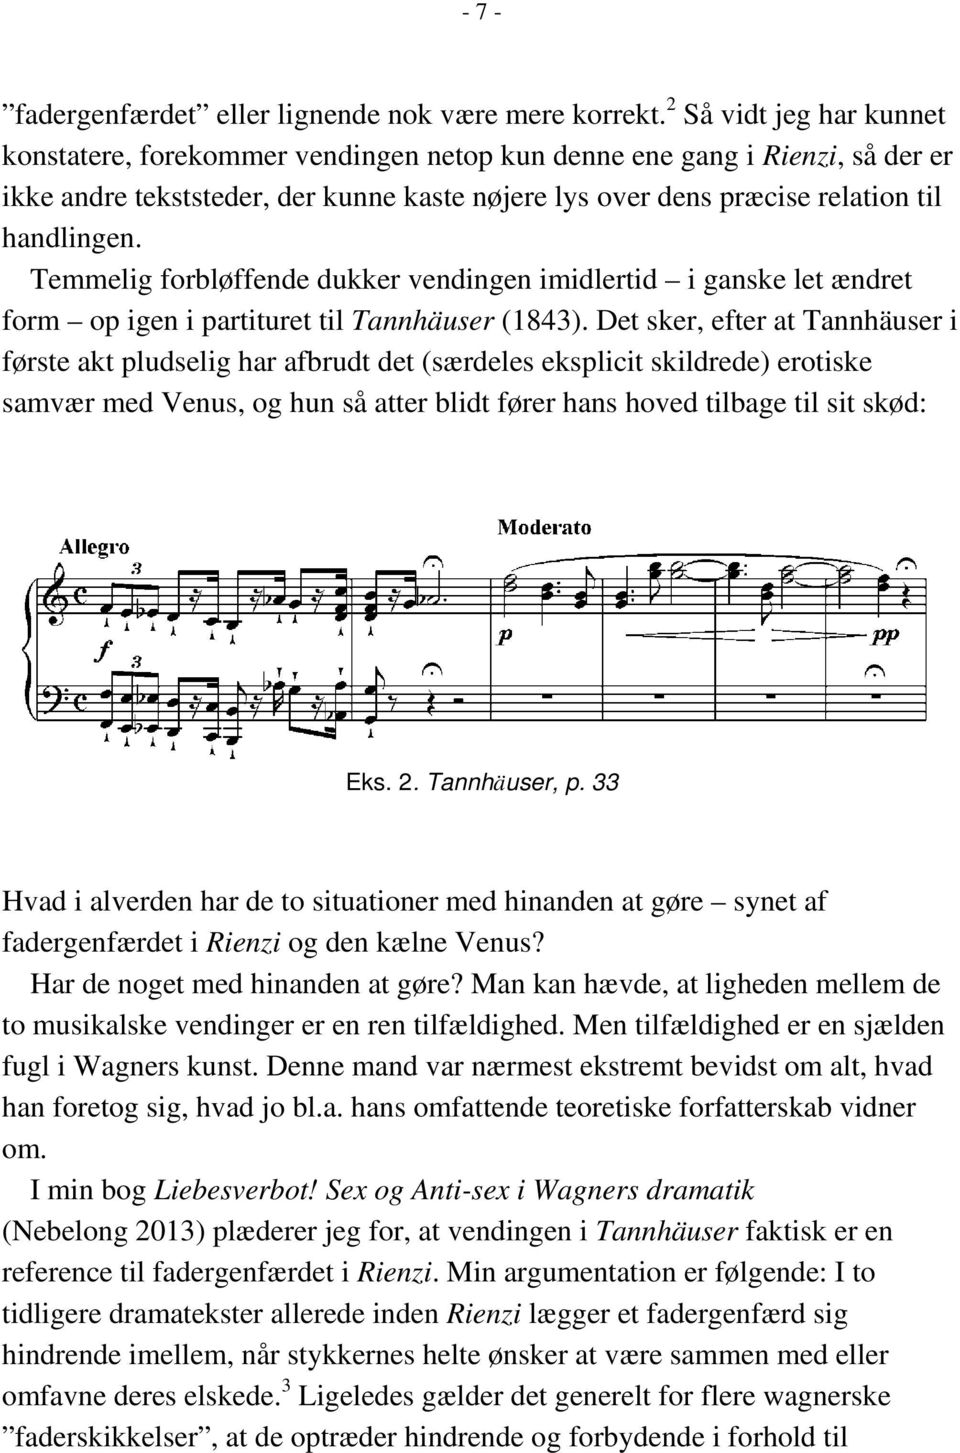 Temmelig forbløffende dukker vendingen imidlertid i ganske let ændret form op igen i partituret til Tannhäuser (1843).